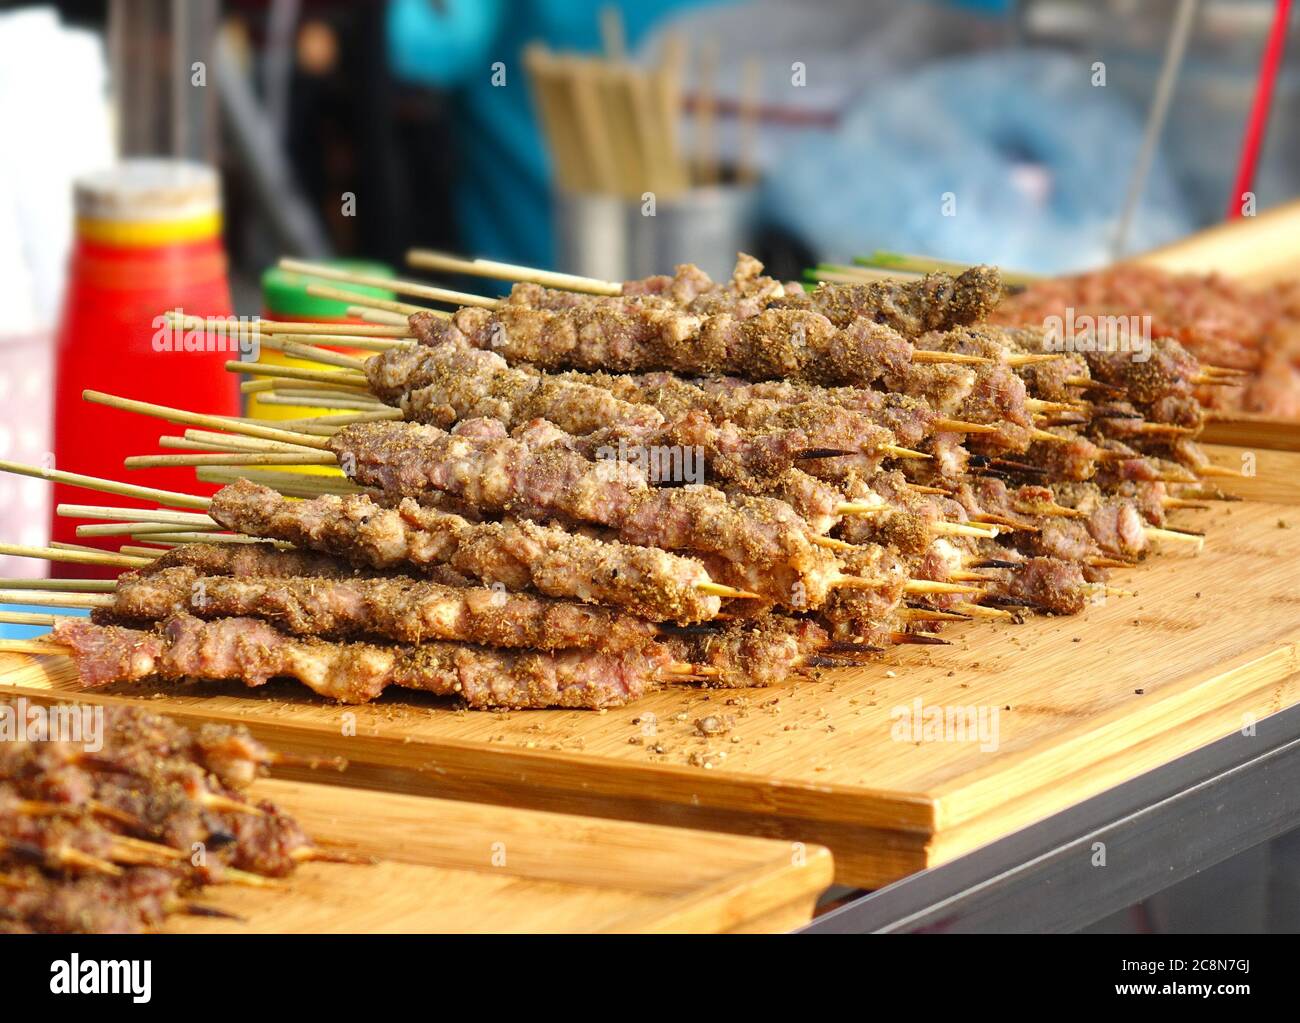 Une cuisine de rue à Taiwan offre brochettes de viande avec des épices Mideast Banque D'Images